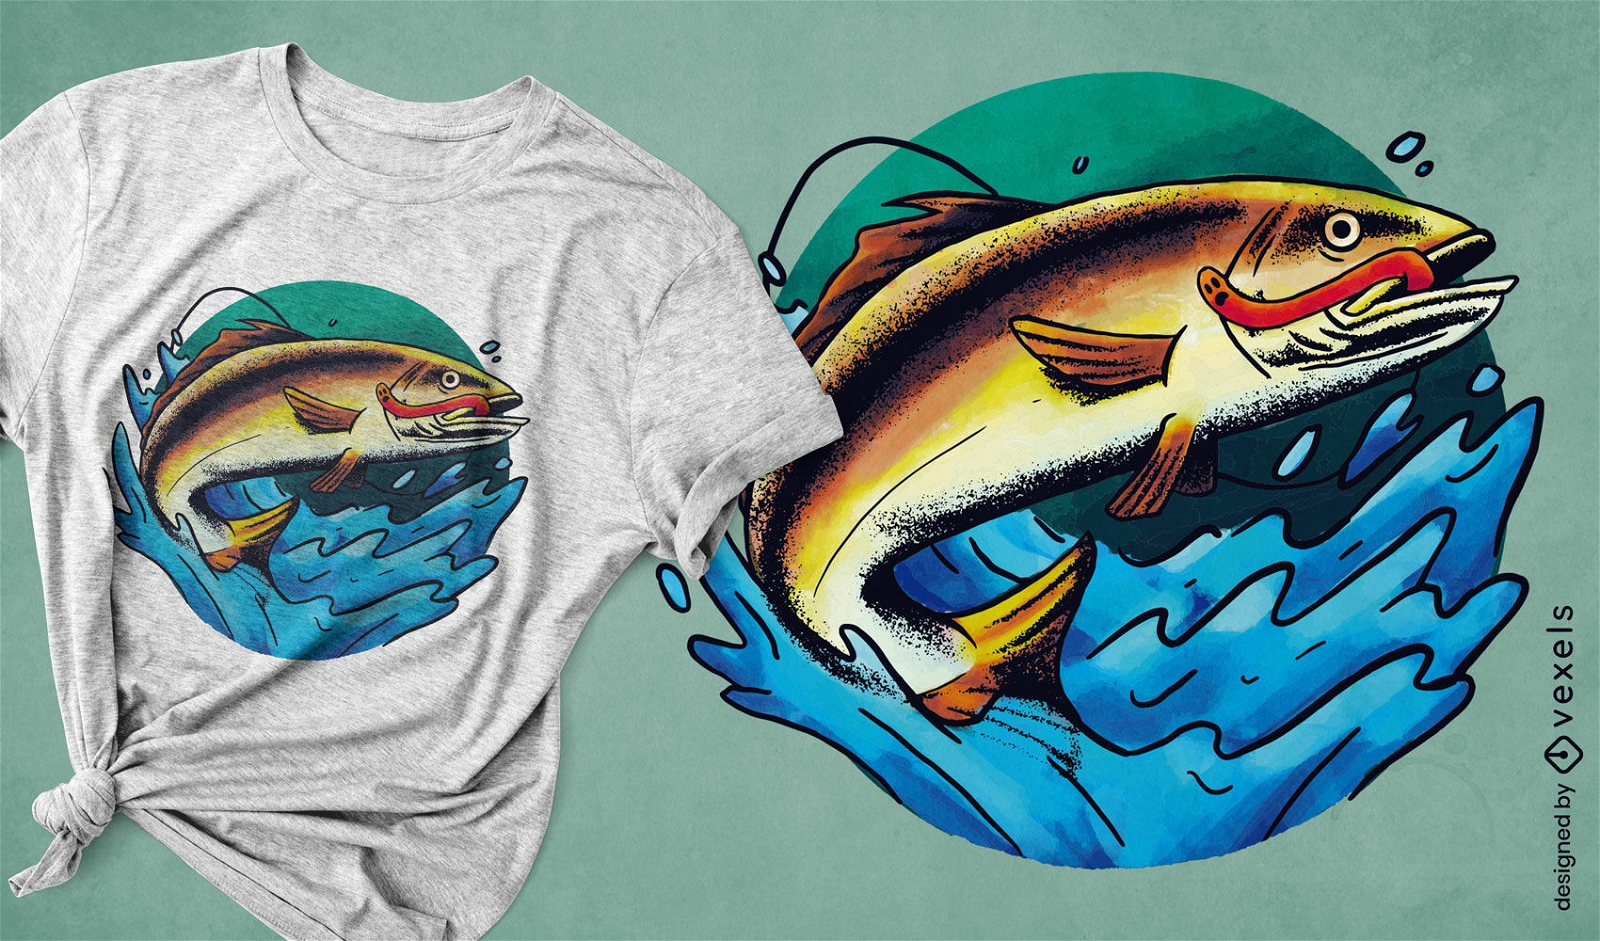 Dise?o de camiseta de animales gusanos que comen peces.